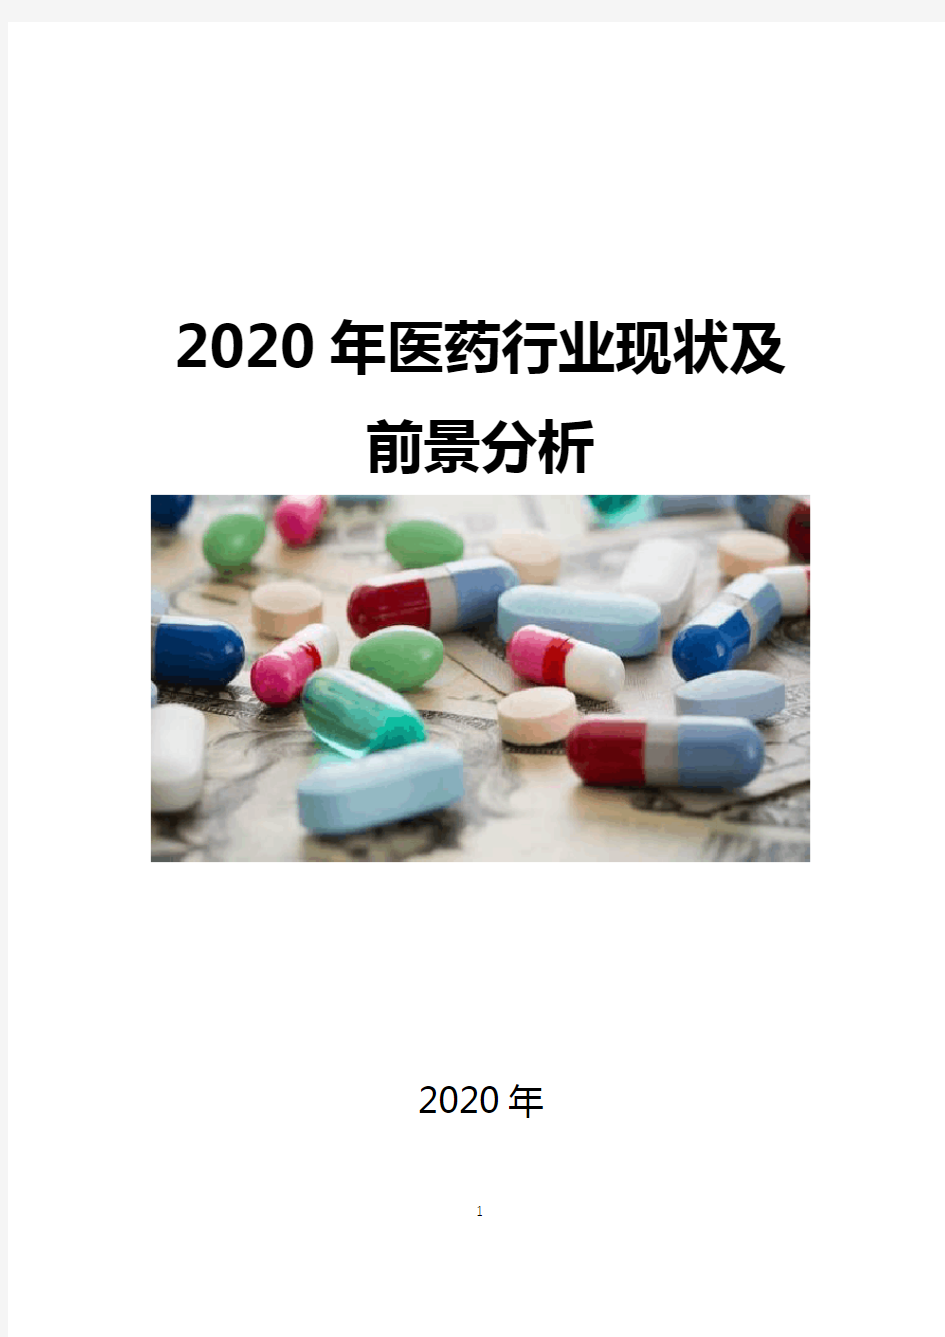 2020医药行业现状及前景分析